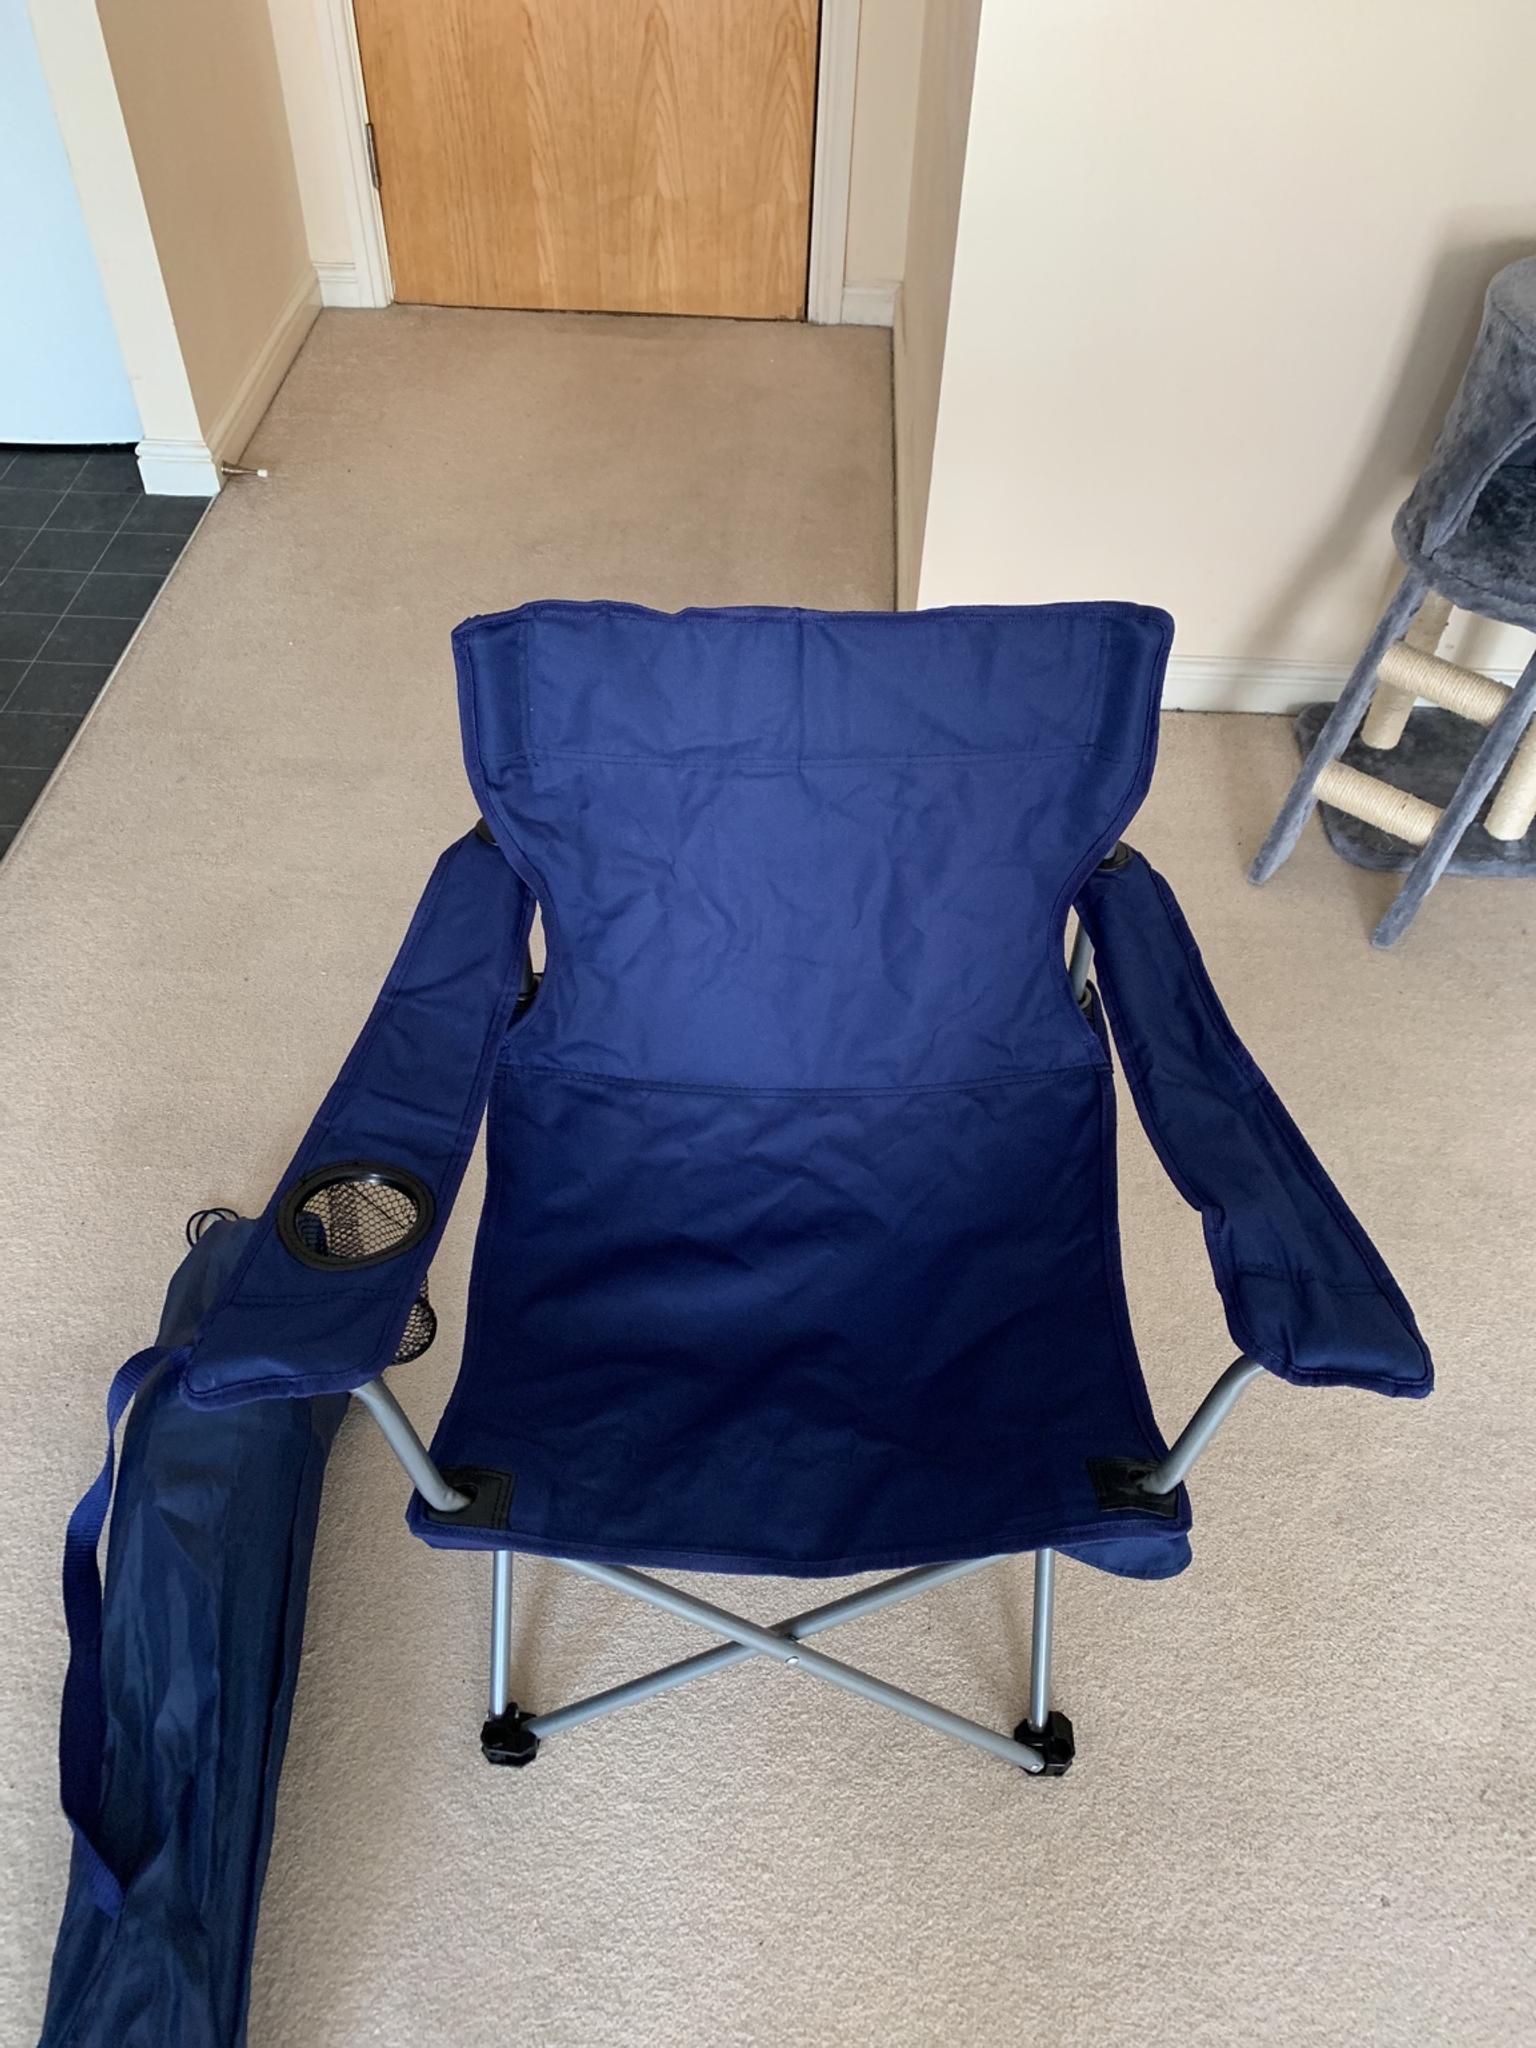 Navy Blue Camping Chairs In Ng10 Erewash Fur 5 00 Zum Verkauf